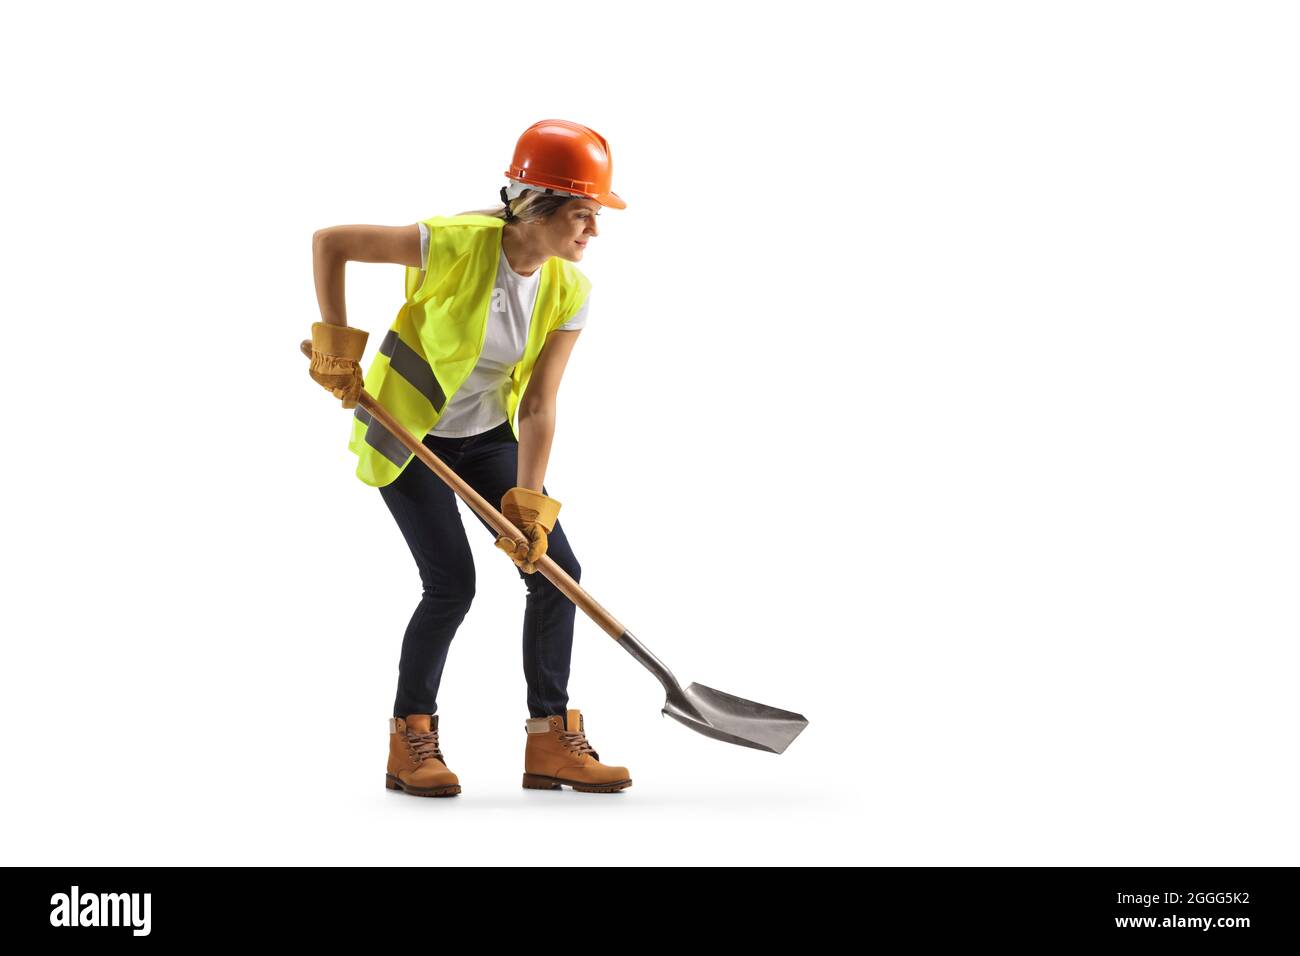 Femme travaillant avec un casque et une ceinture à outils, creusant avec une pelle isolée sur fond blanc Banque D'Images